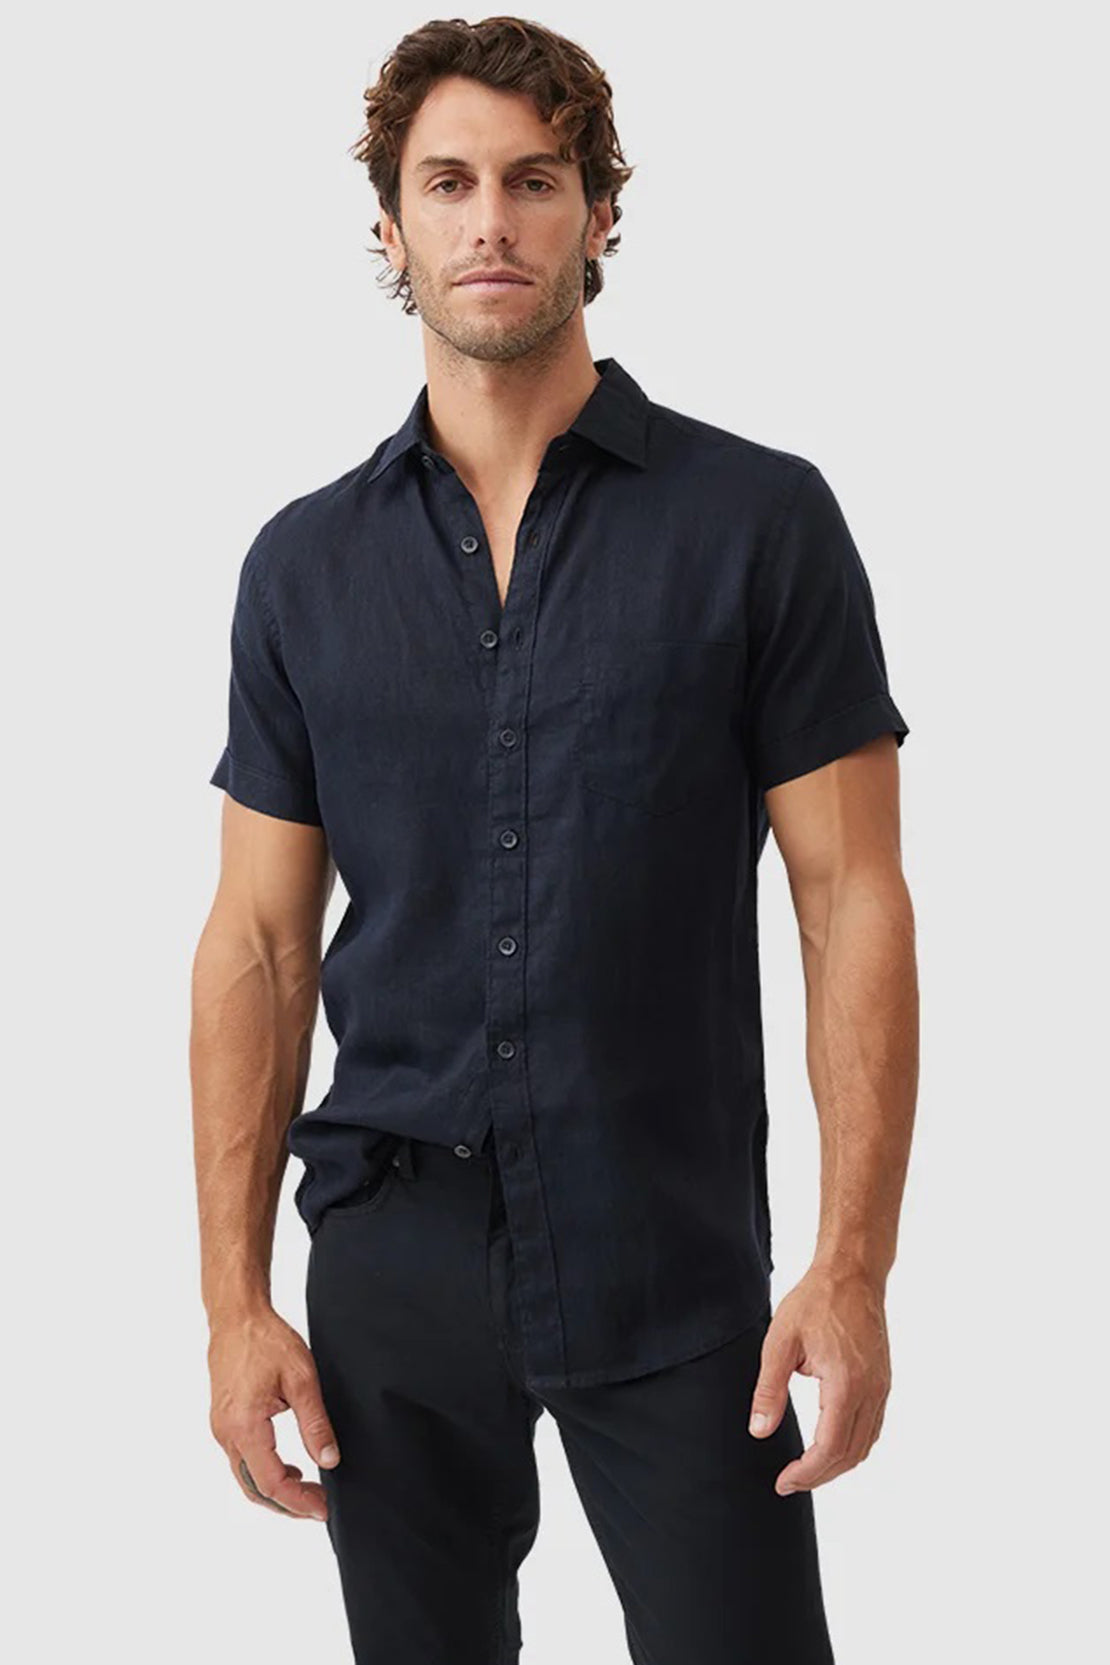 RODD & GUNN - PALM BEACH Short Sleeve Linen Shirt In Midnight Blue LP6266